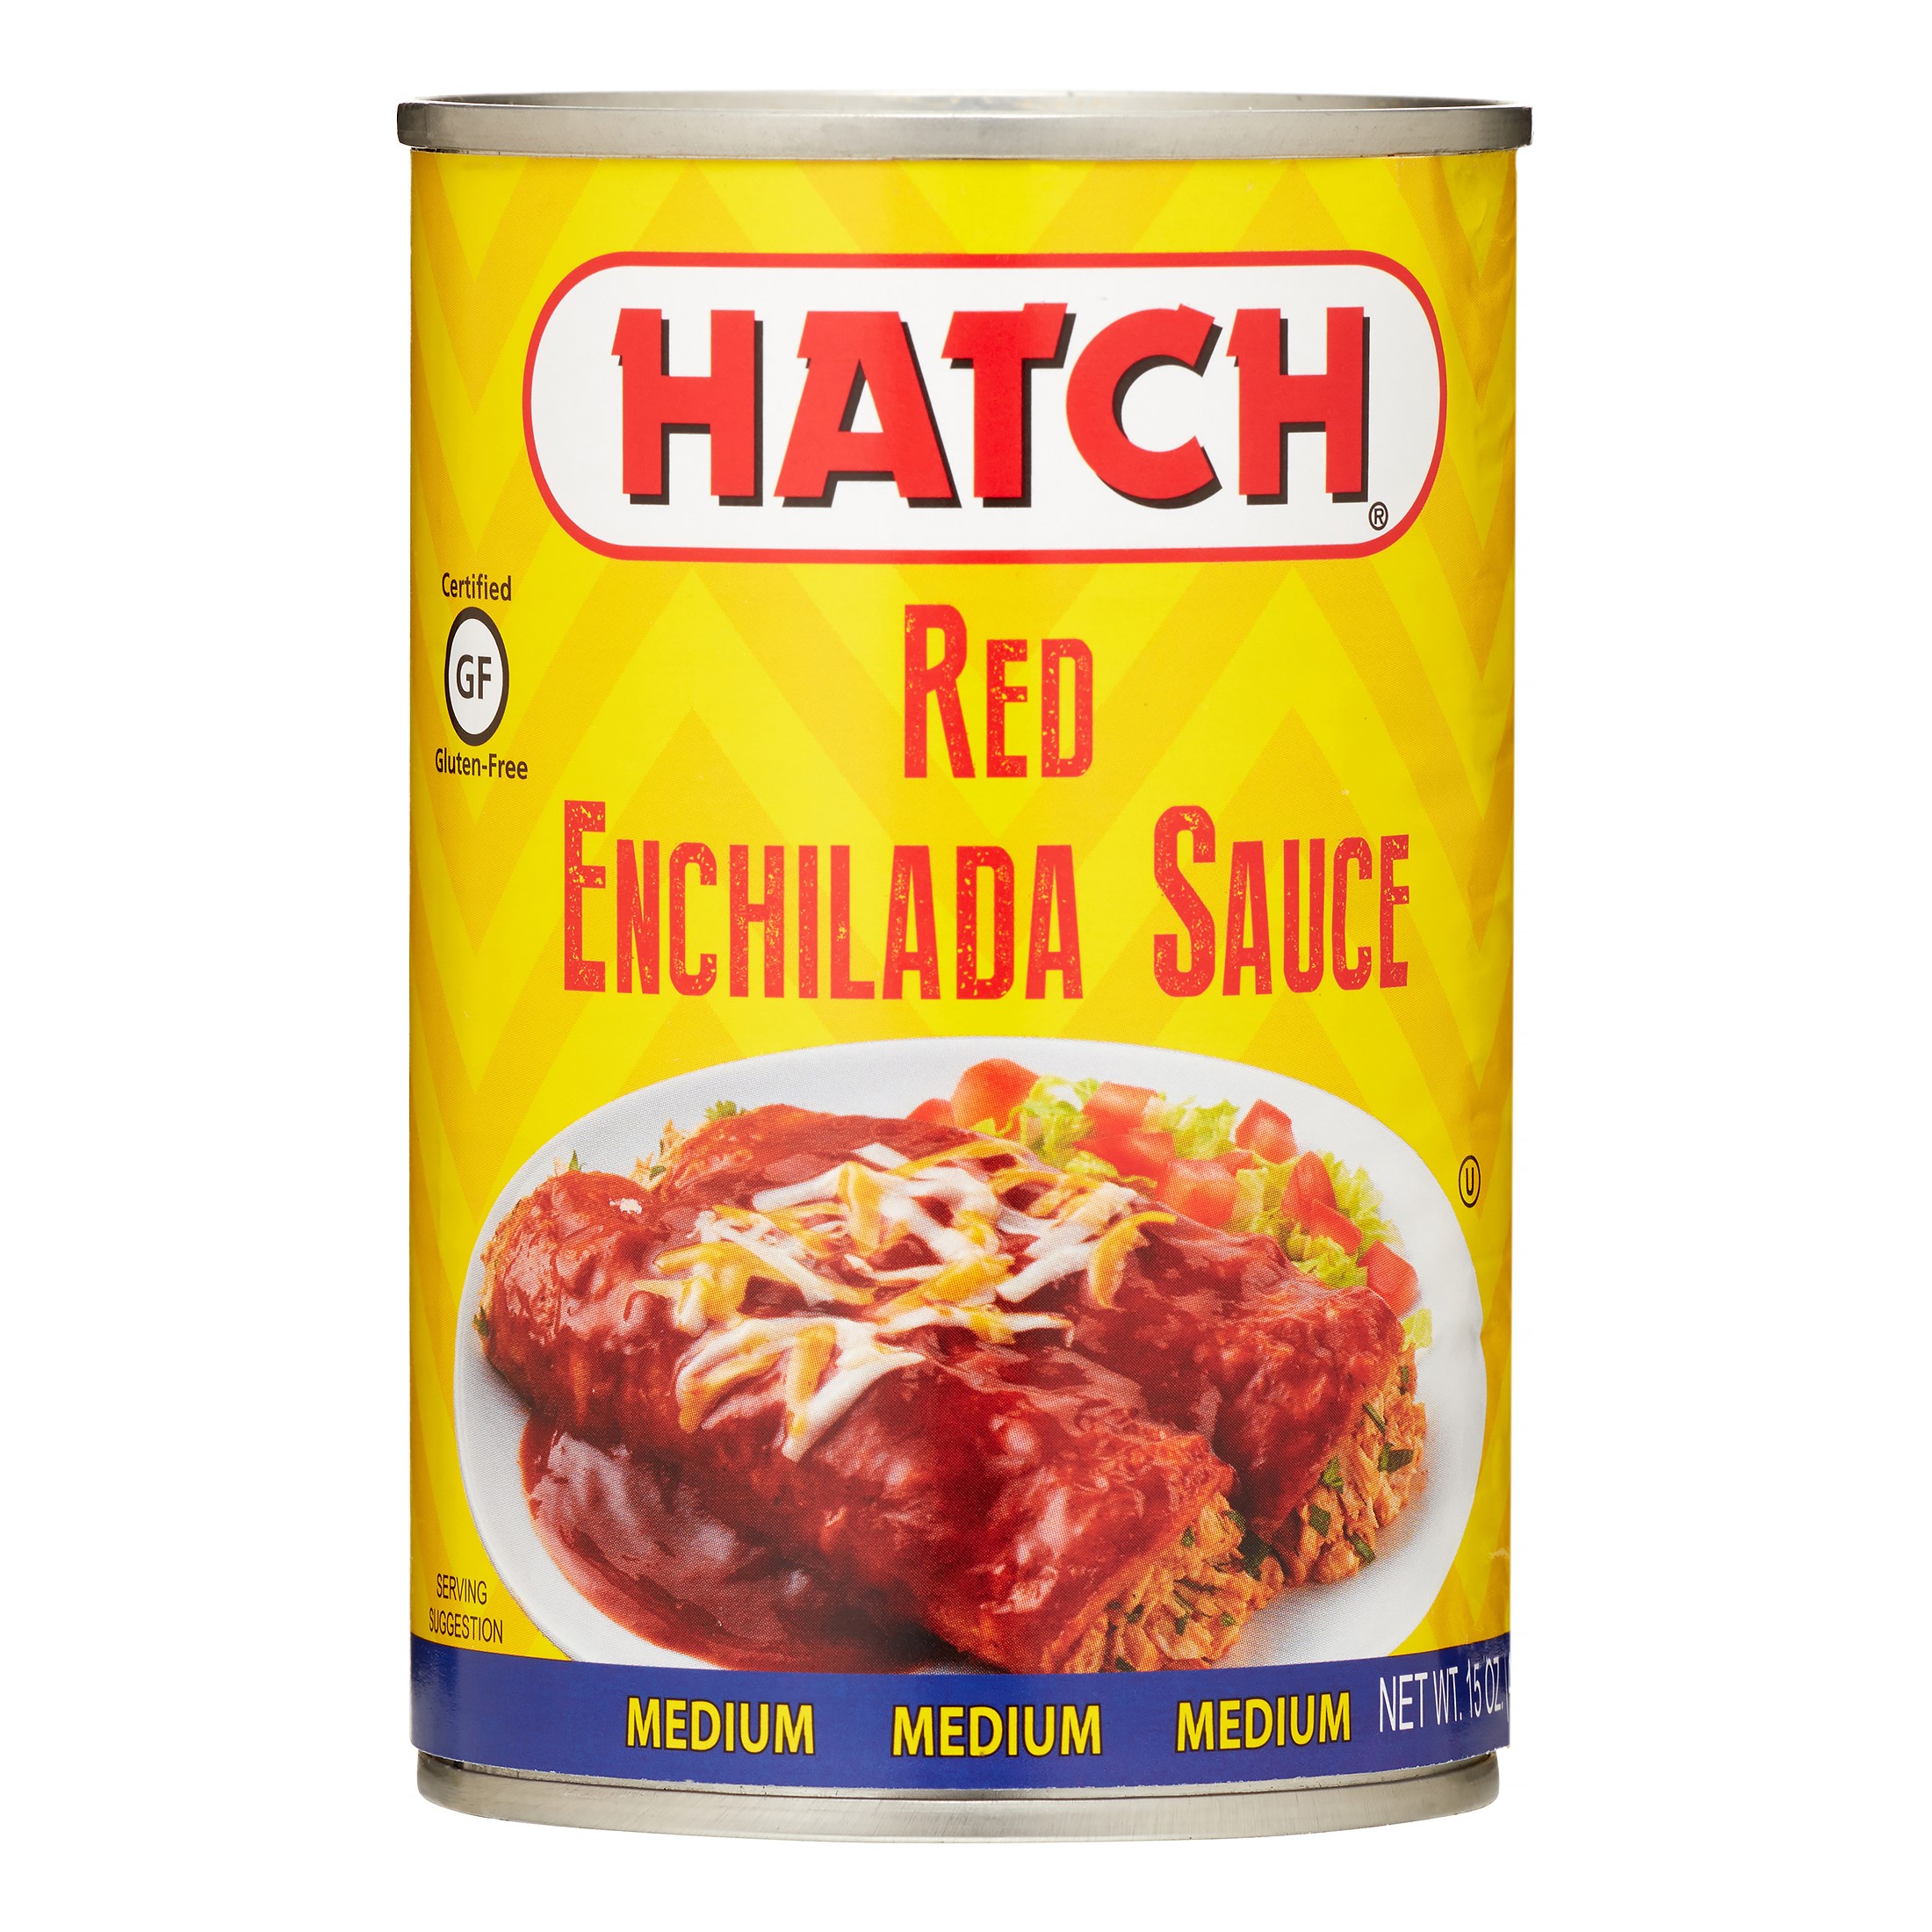 HATCH, SAUCE ENCHLDA RED MED, 15 oz, (Pack of 3) - image 1 of 2